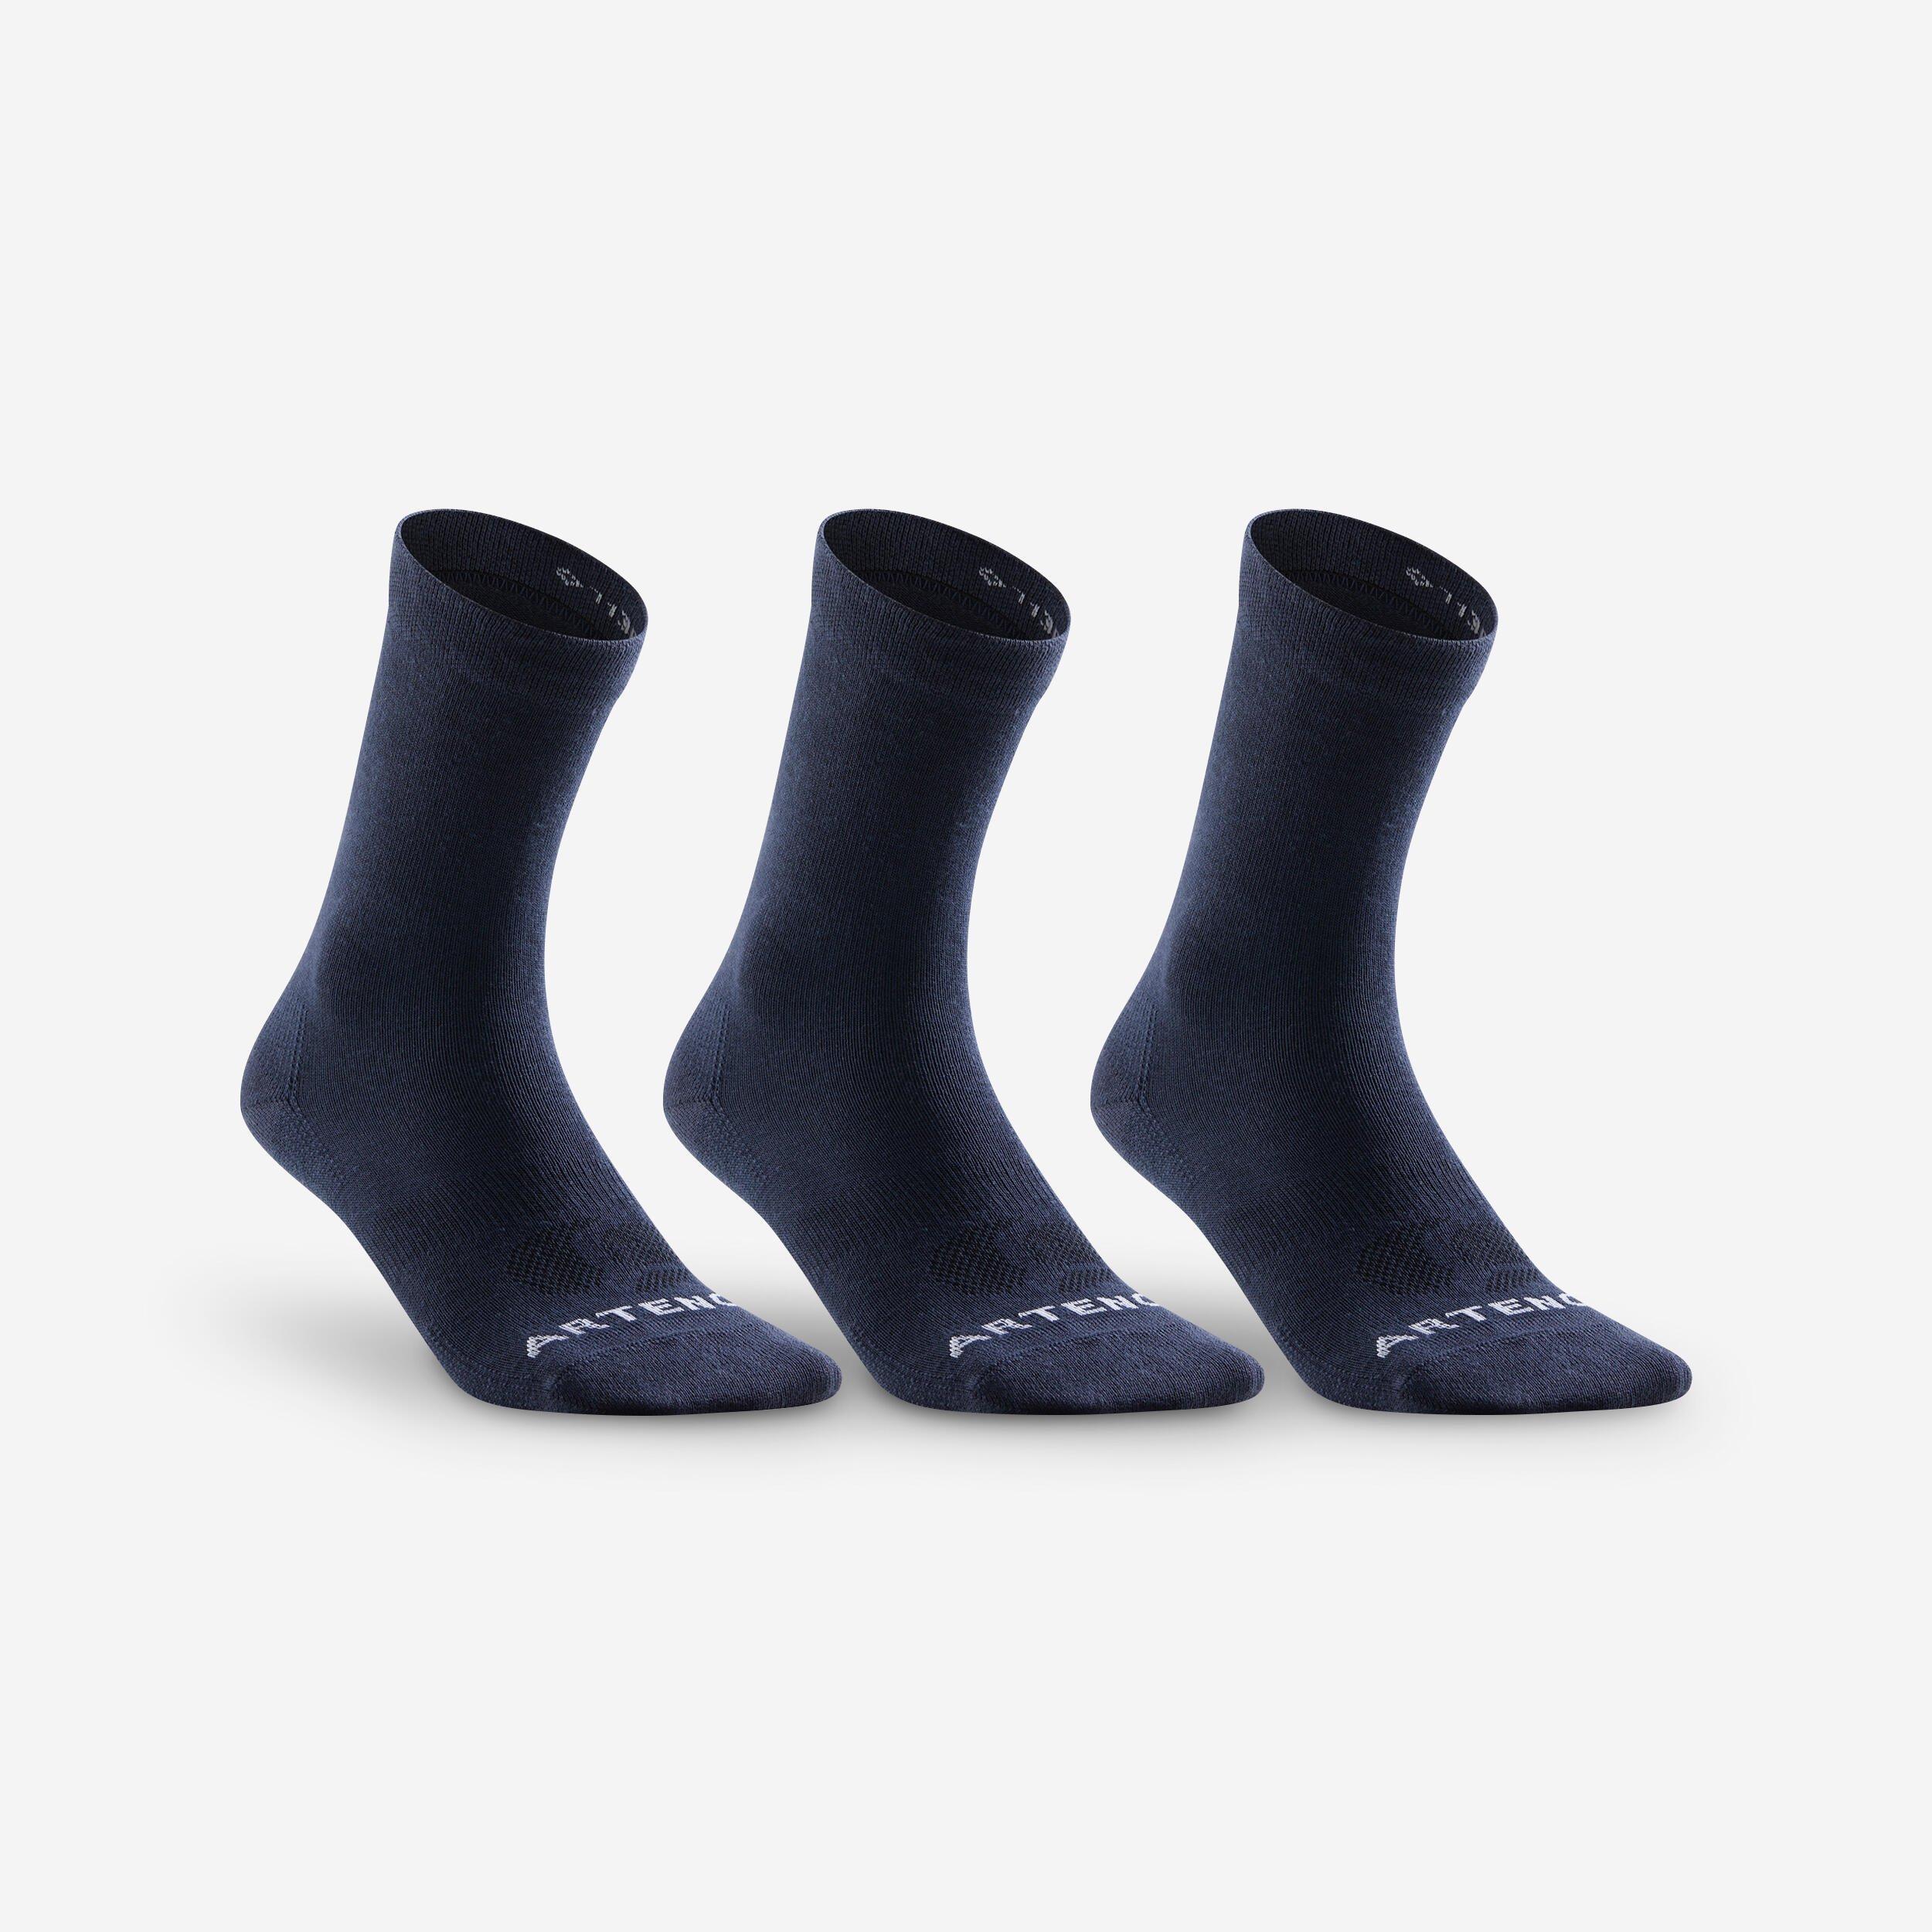 High Sports Socks Rs 160 Tri-Pack